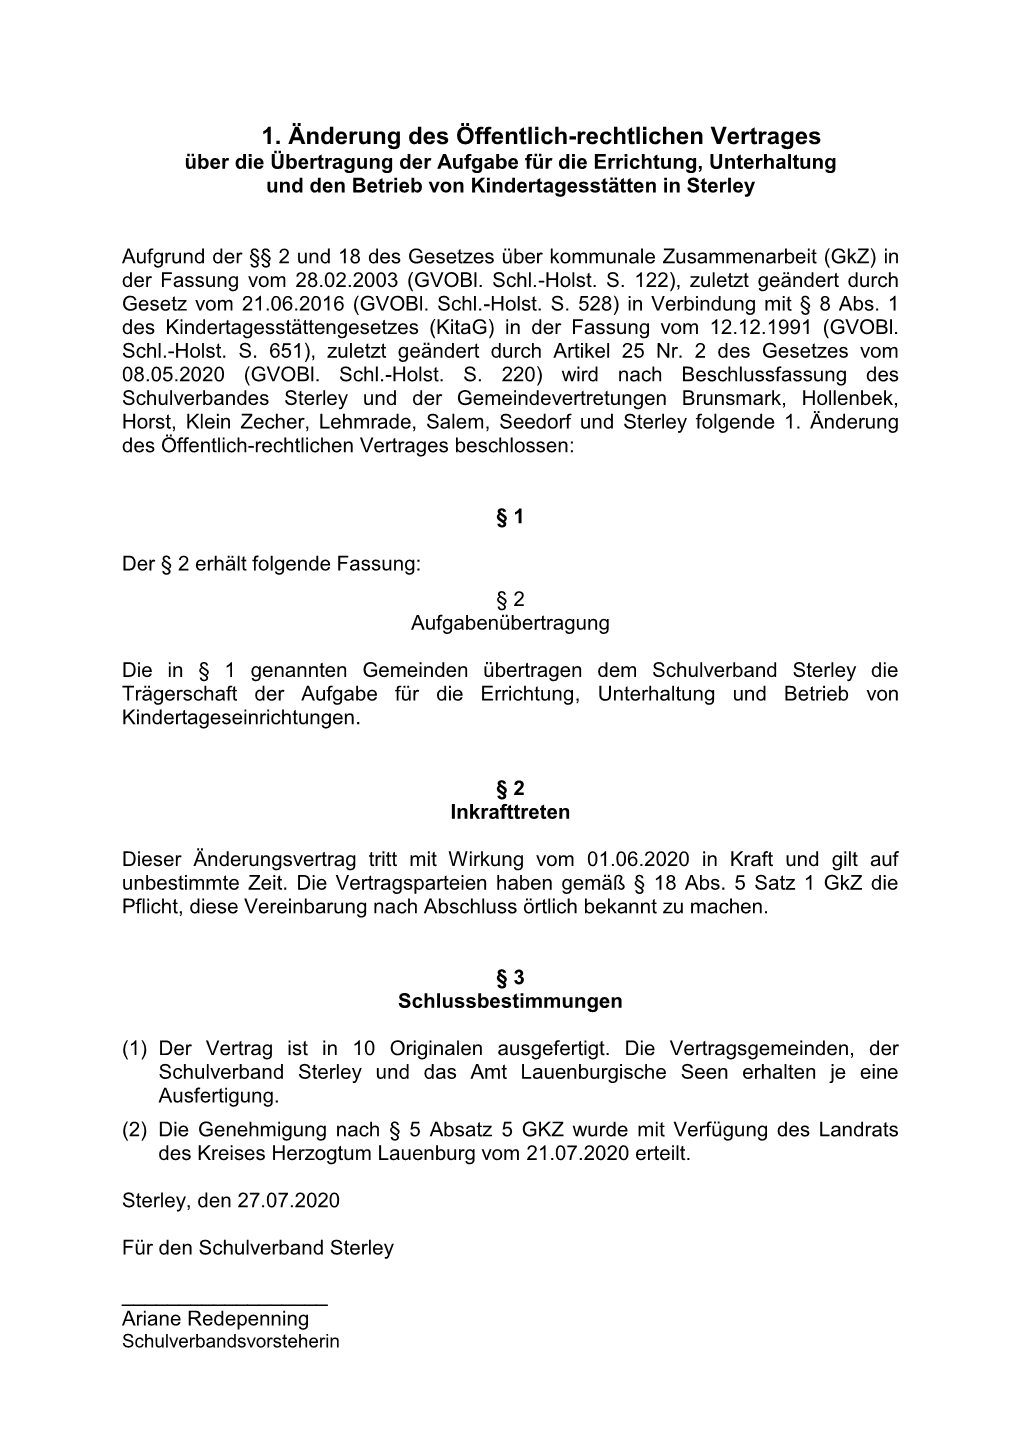 1. Änderung Des Öffentlich-Rechtlichen Vertrages Über Die Übertragung Der Aufgabe Für Die Errichtung, Unterhaltung Und Den Betrieb Von Kindertagesstätten in Sterley